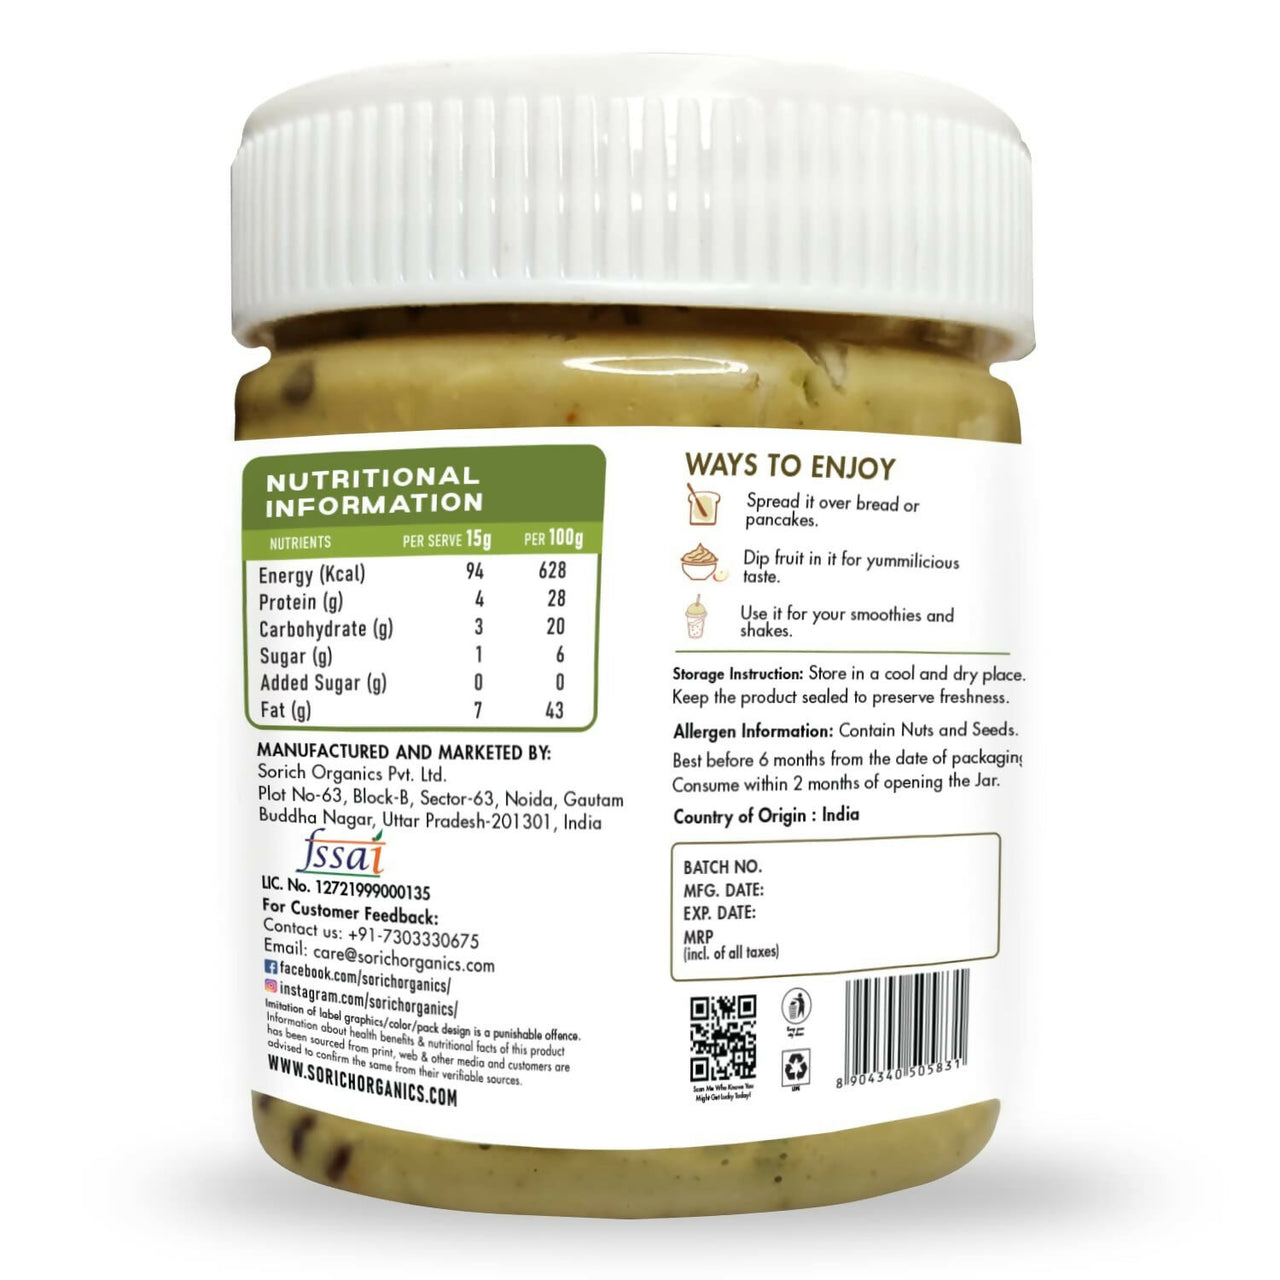 Sorich Organics Seed Peanut Crunchy Butter - Distacart